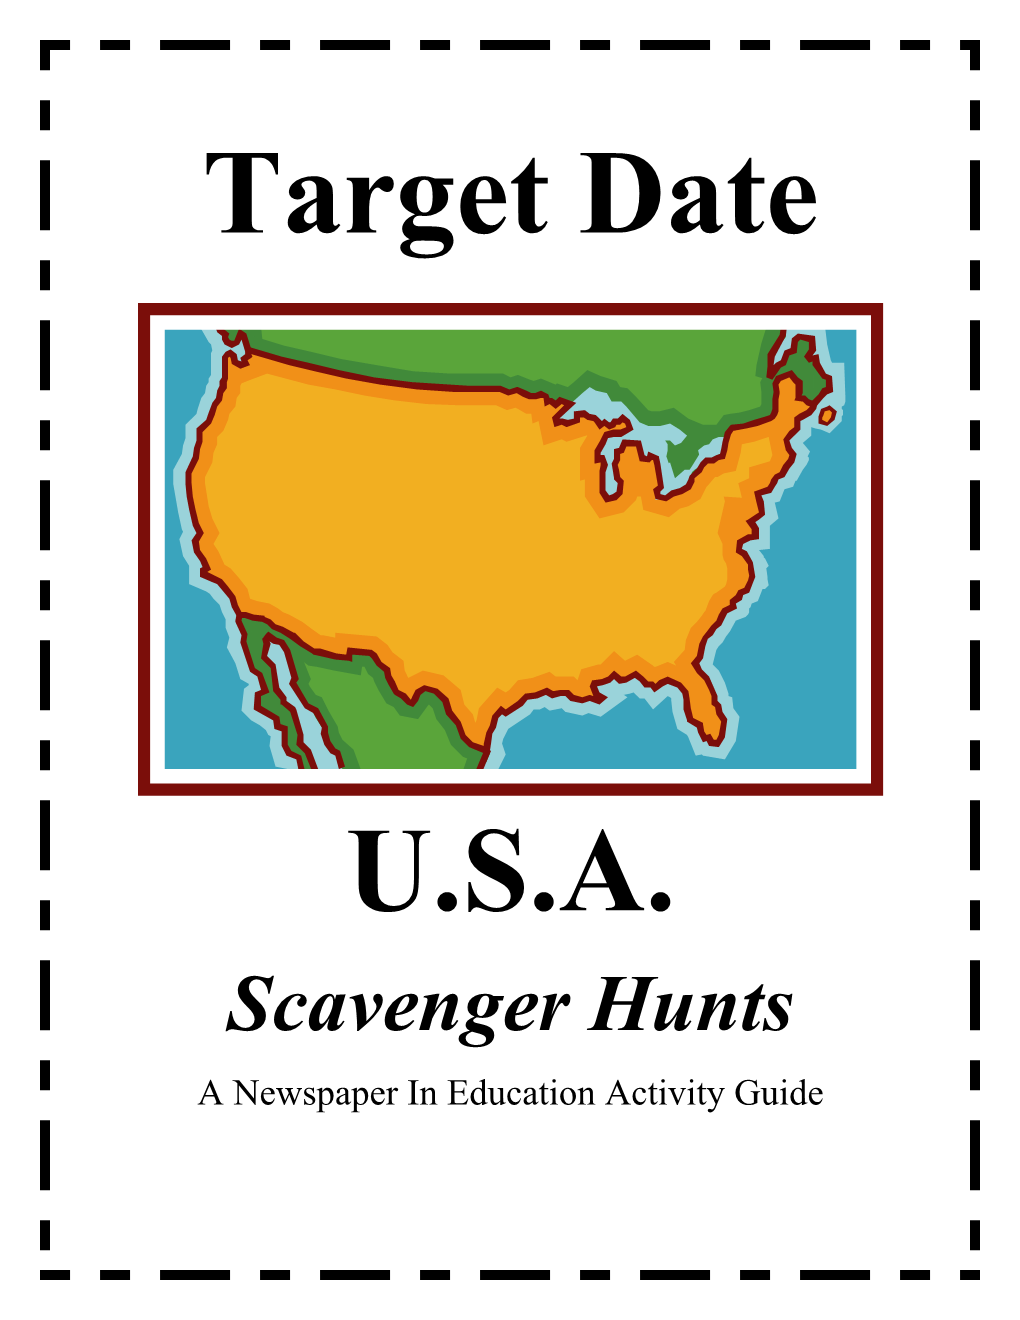 Target Date U.S.A